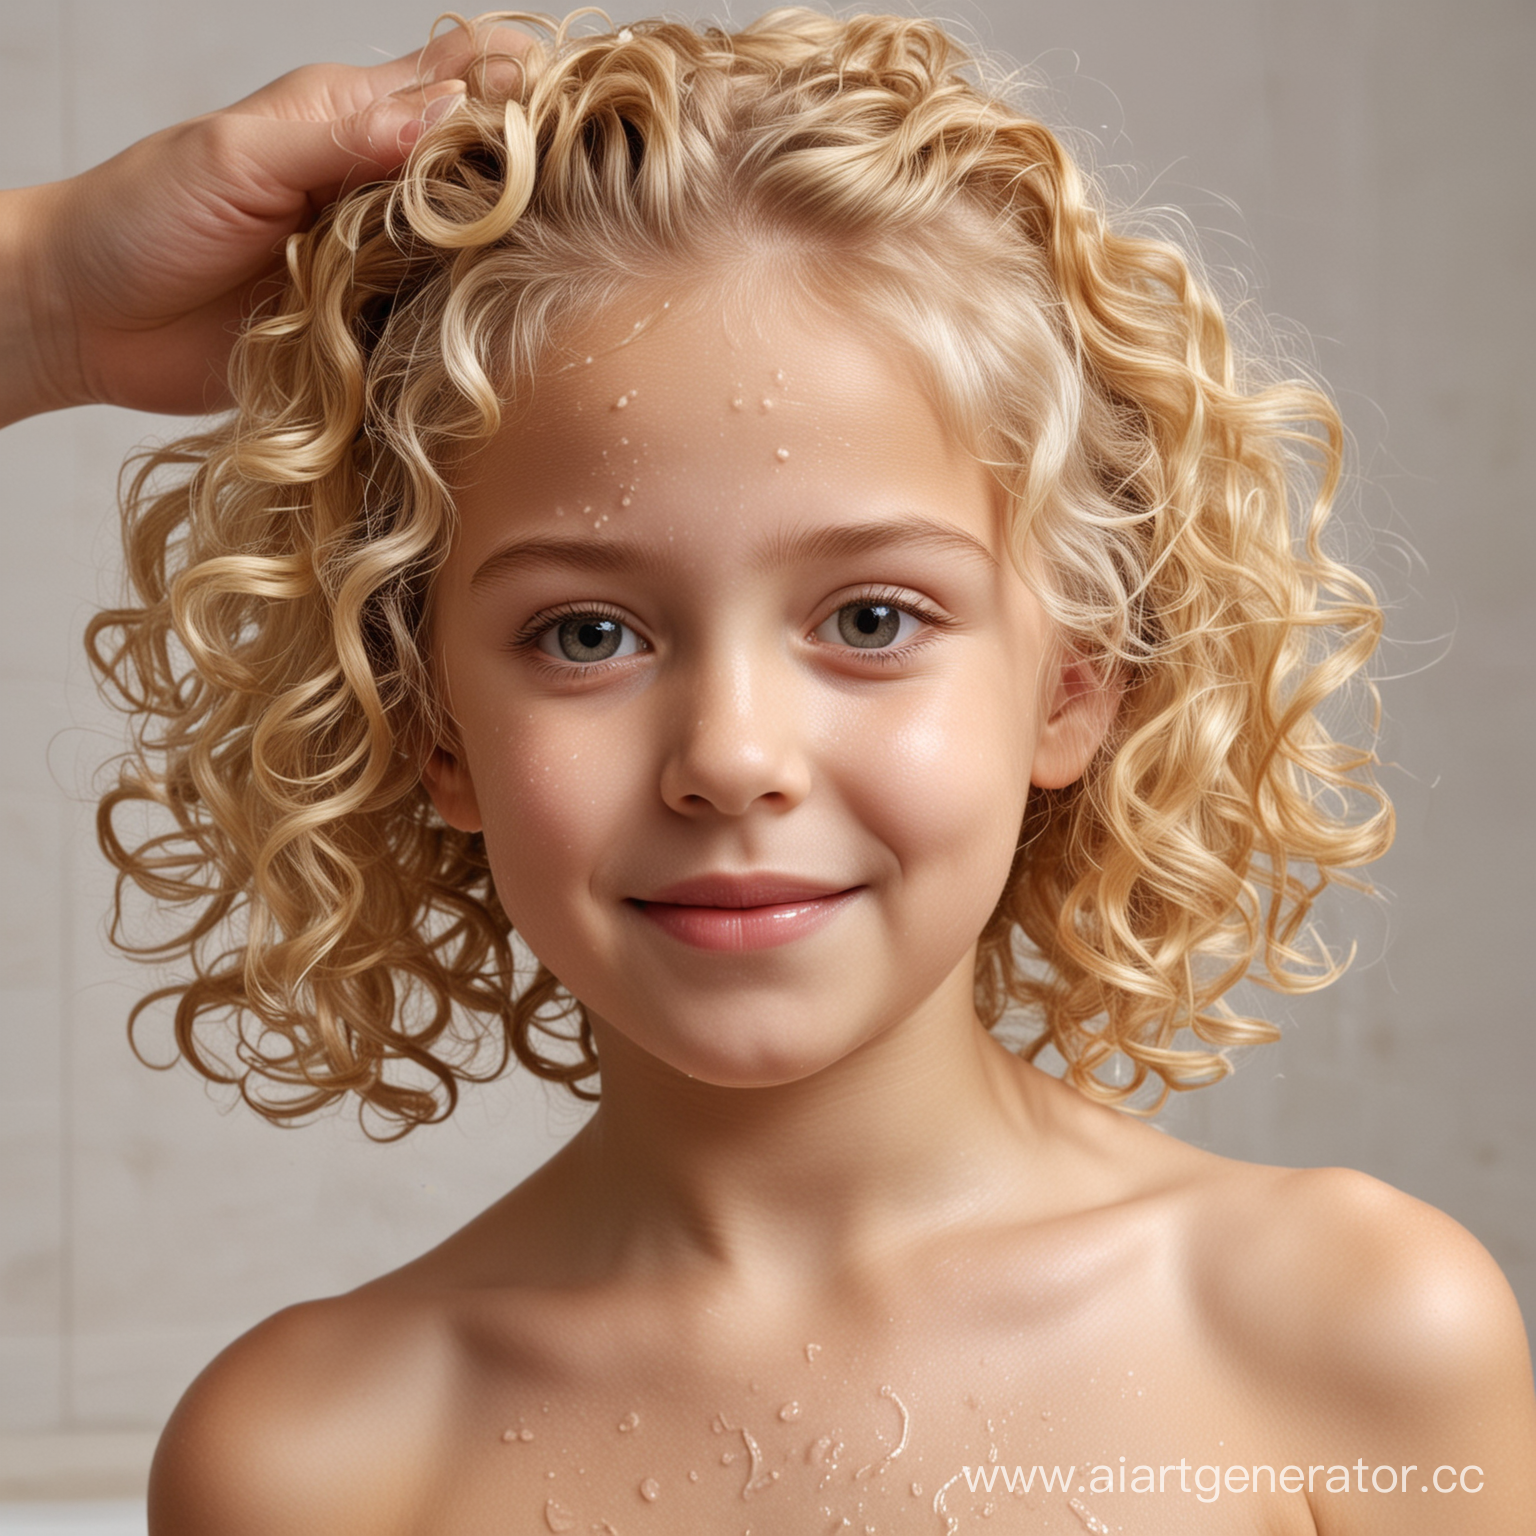 русая девочка, которой 5 лет, моют голову шампунем без слез "Мои кудряшки"
